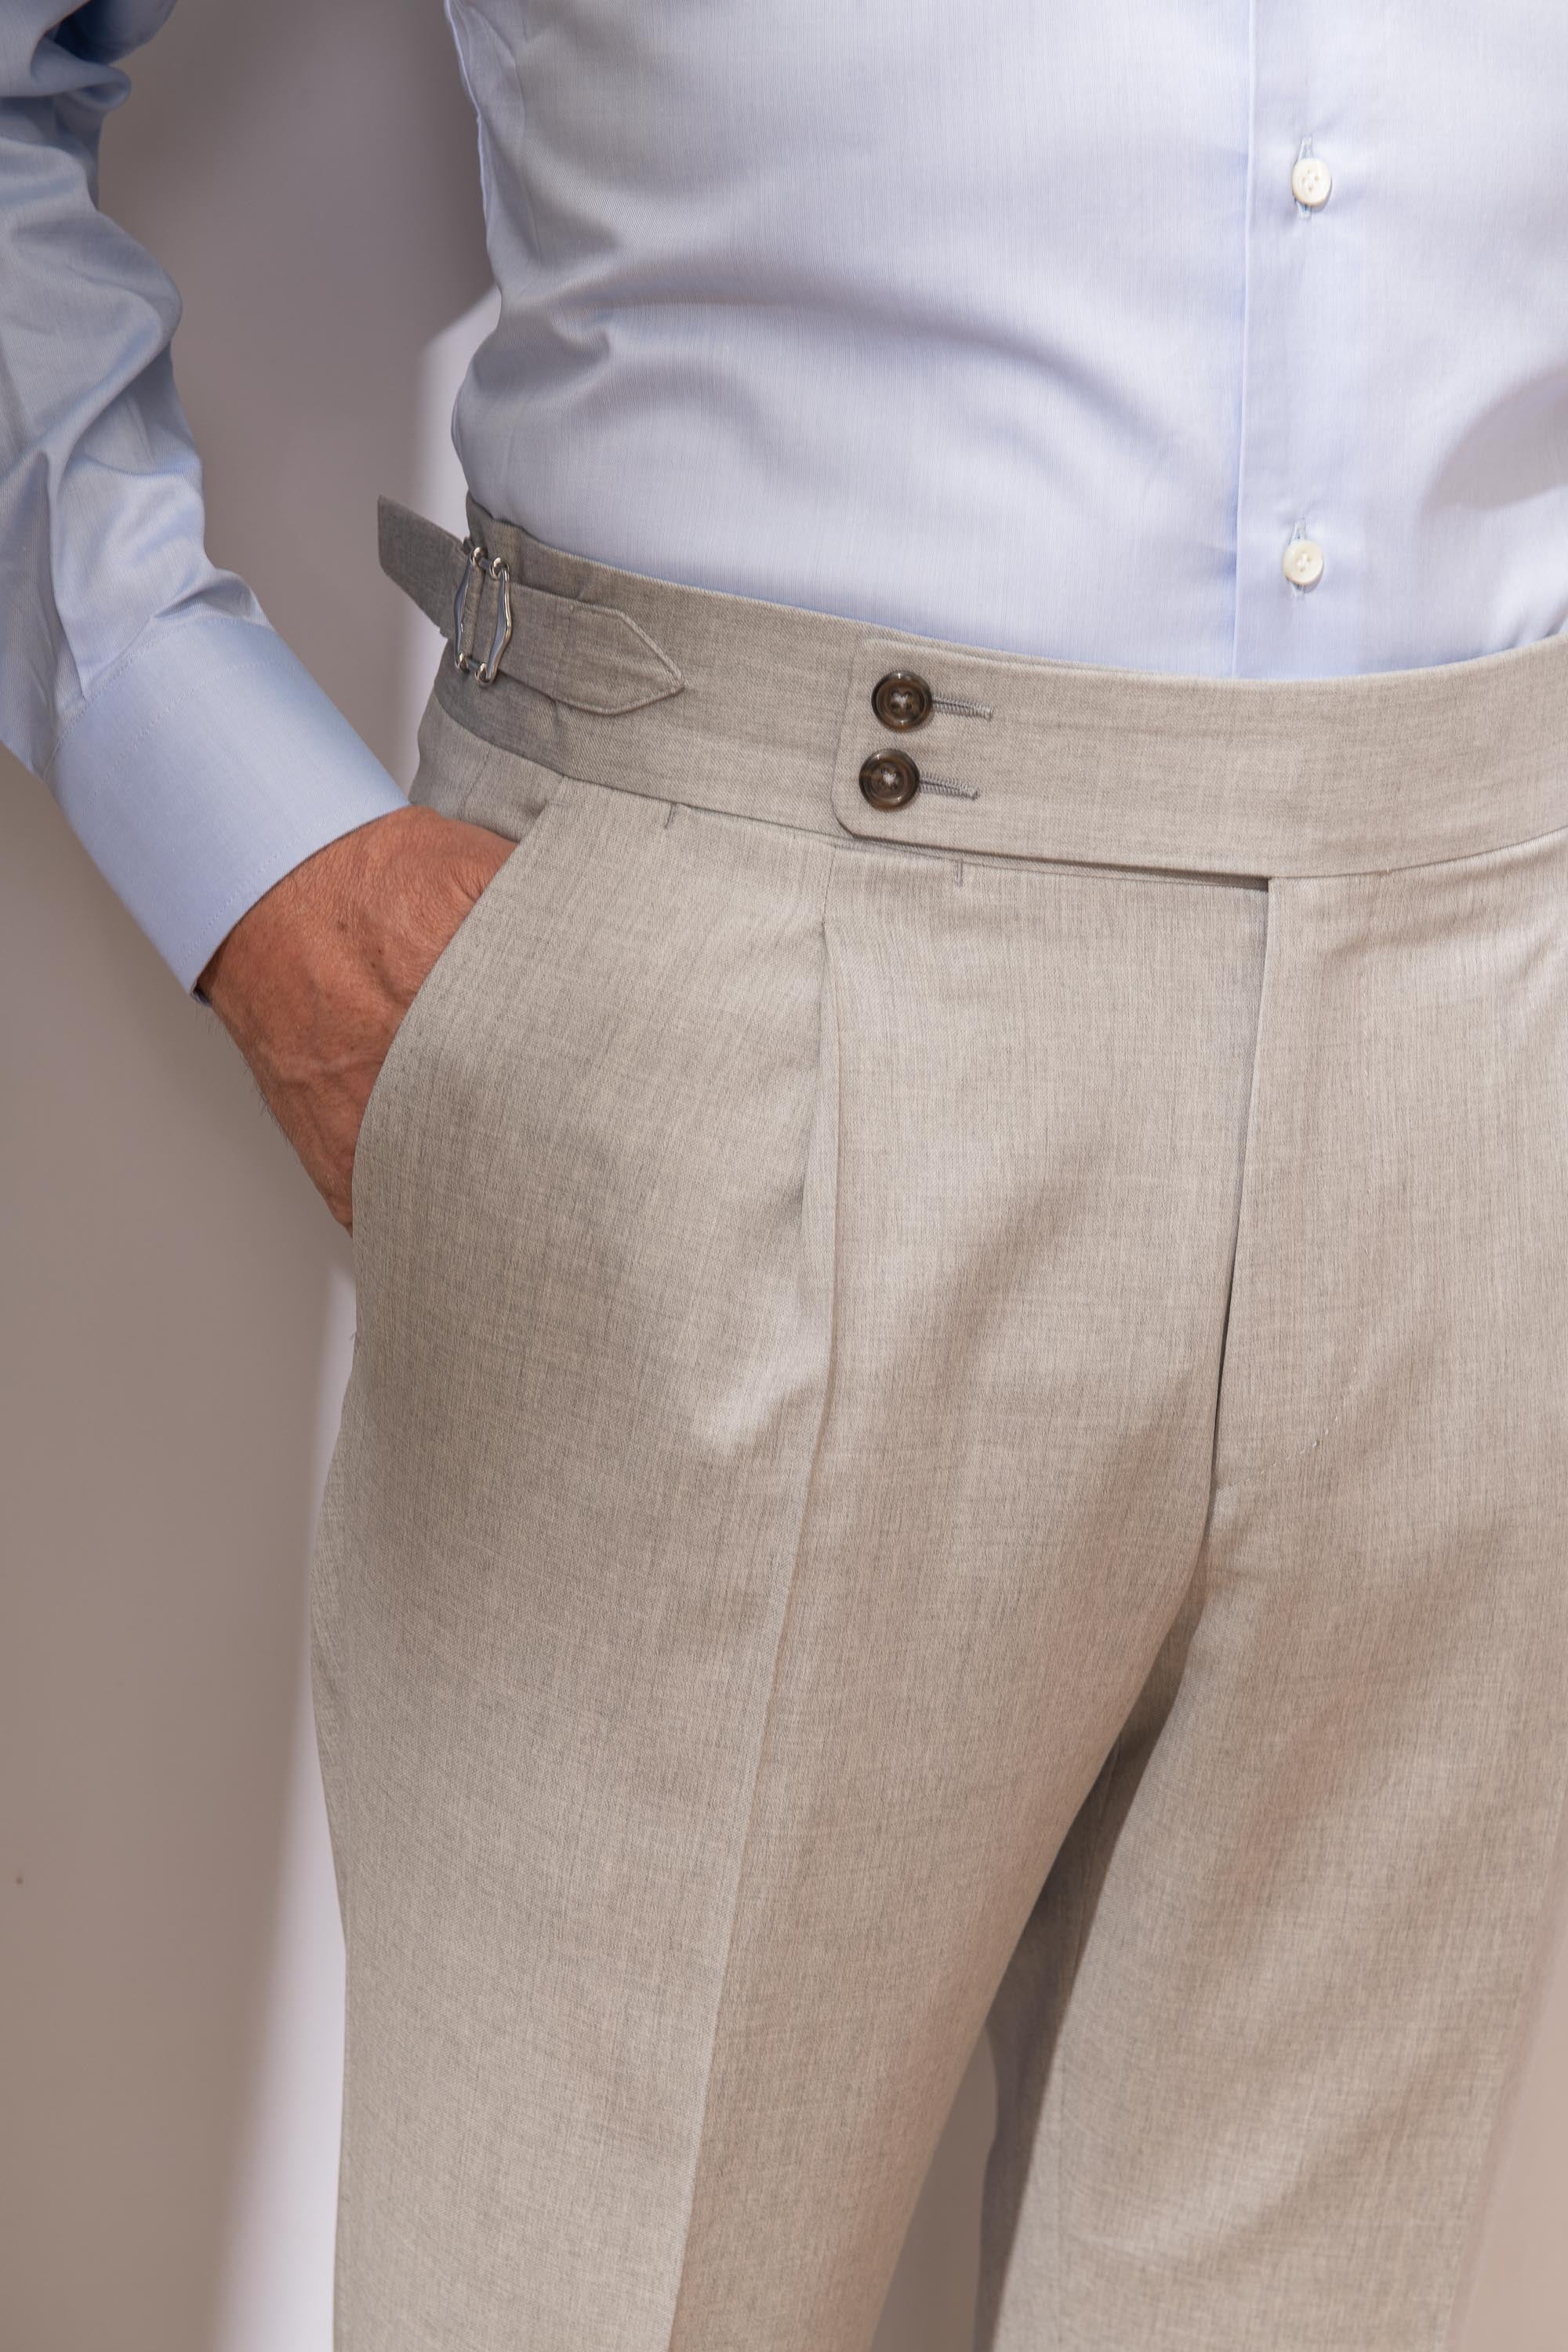 Pantaloni Grigio Chiaro " Soragna Capsule Collection" - Made in Italy